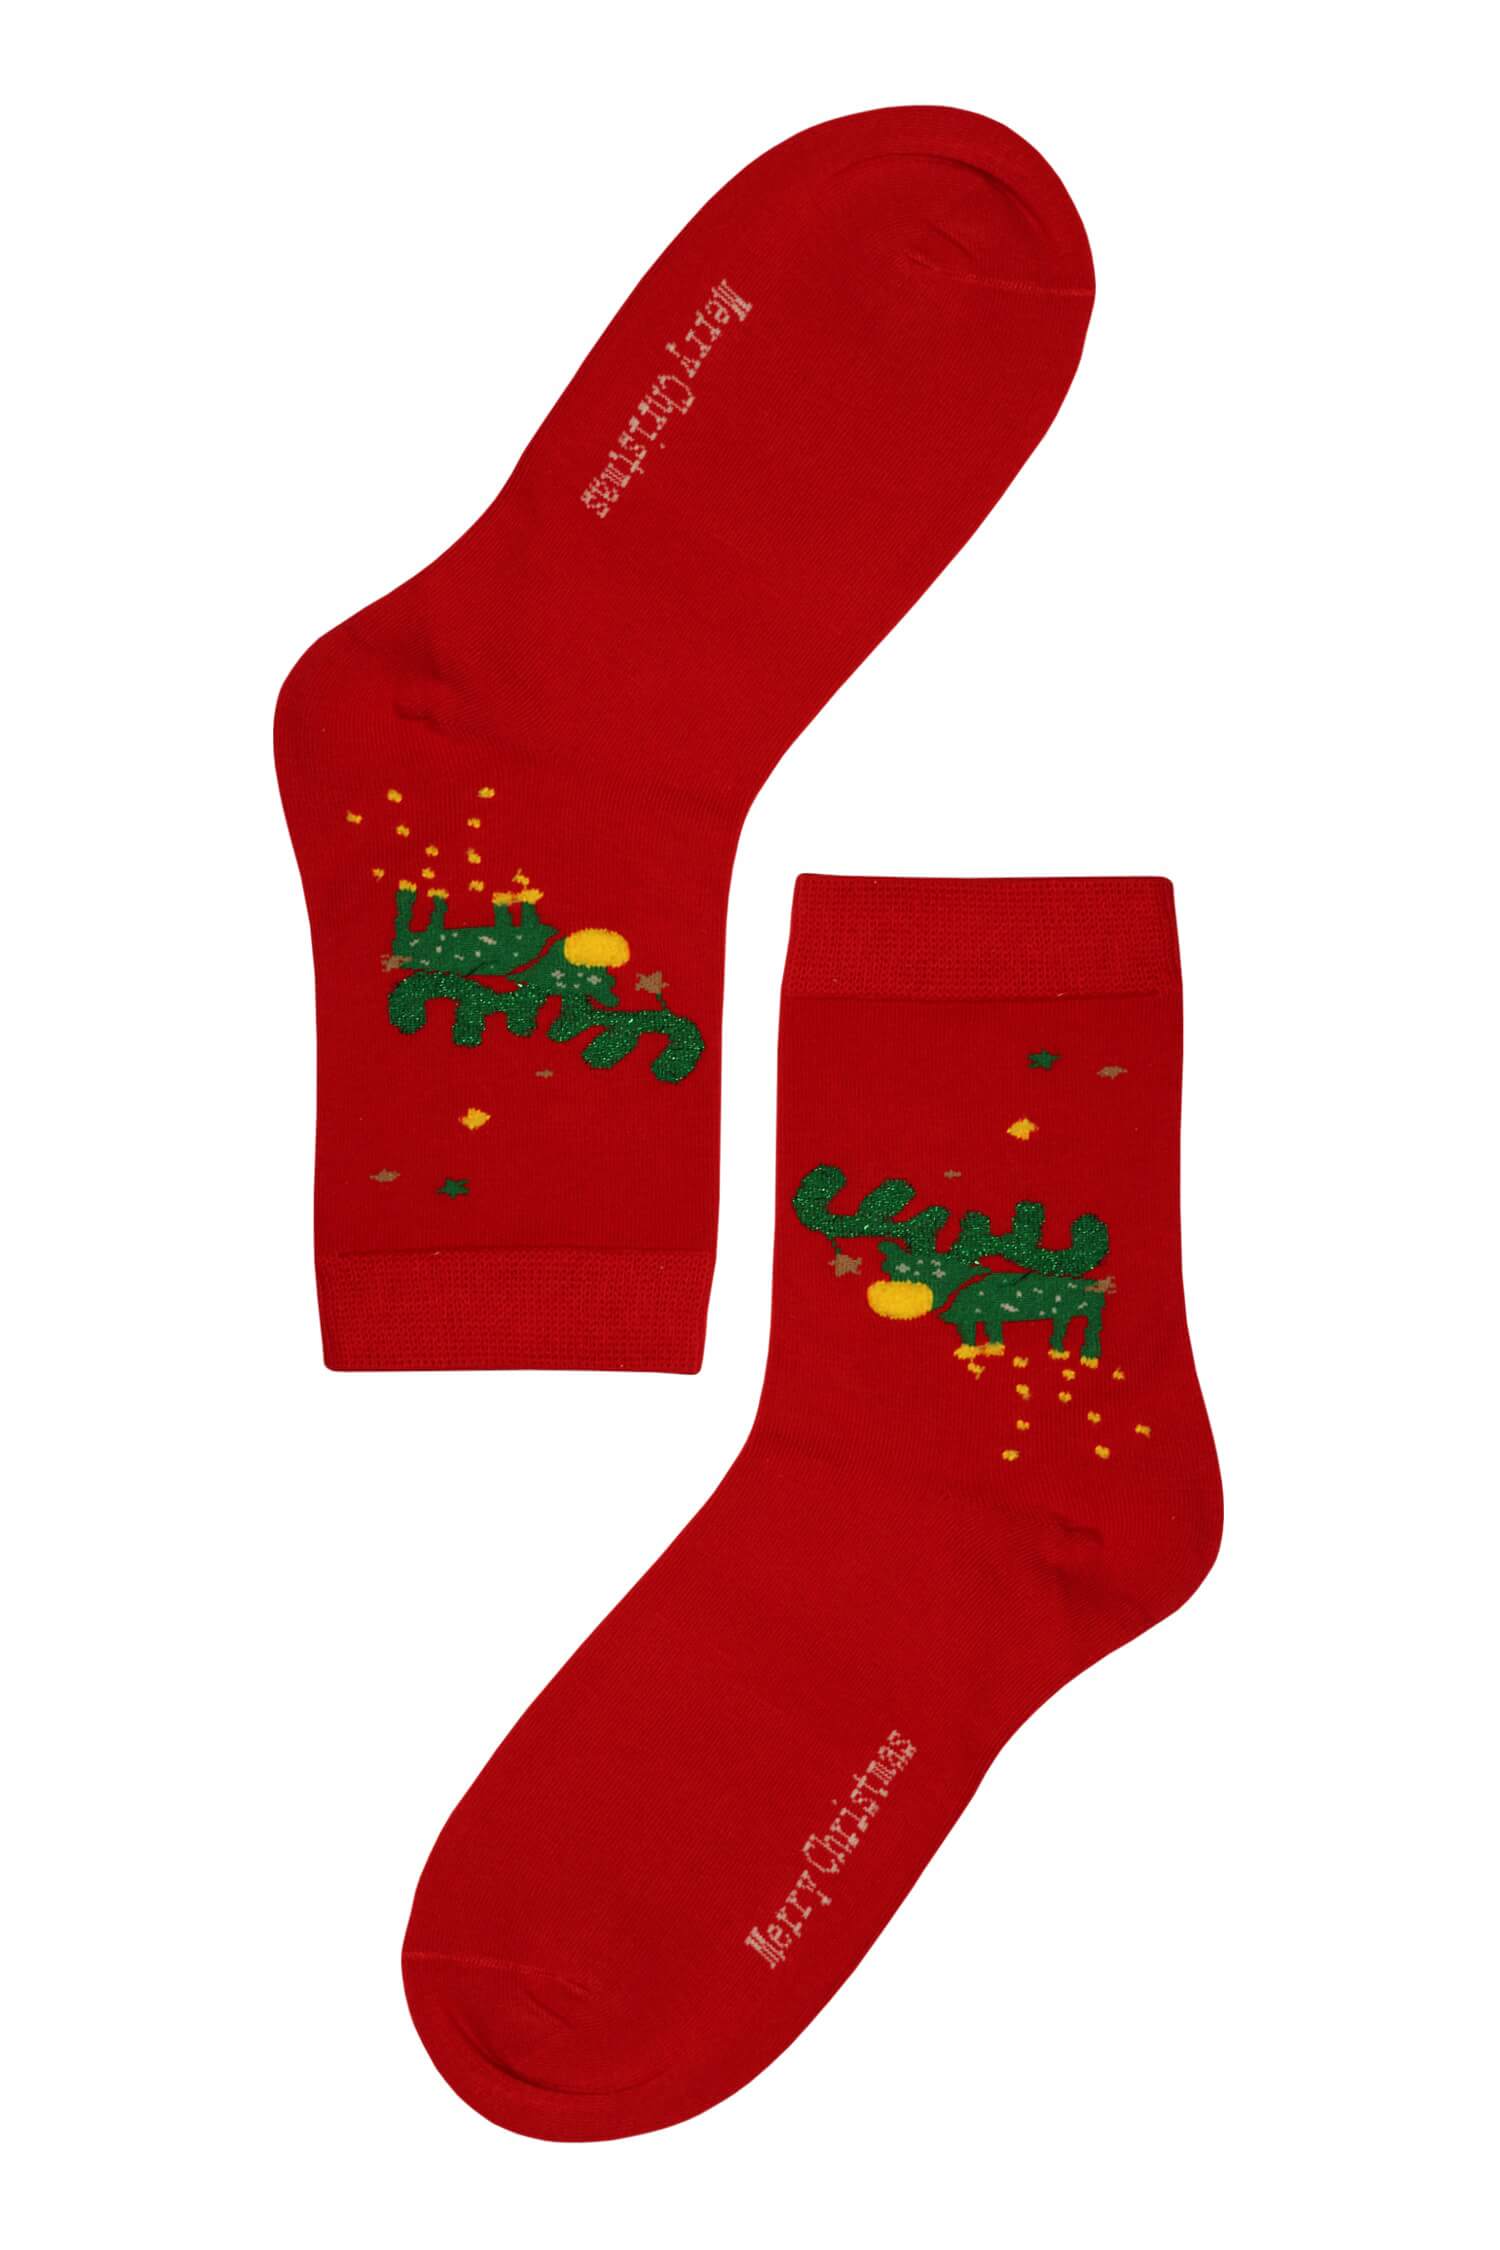 Vánoční dámské ponožky Zelený sob 38-41 červená